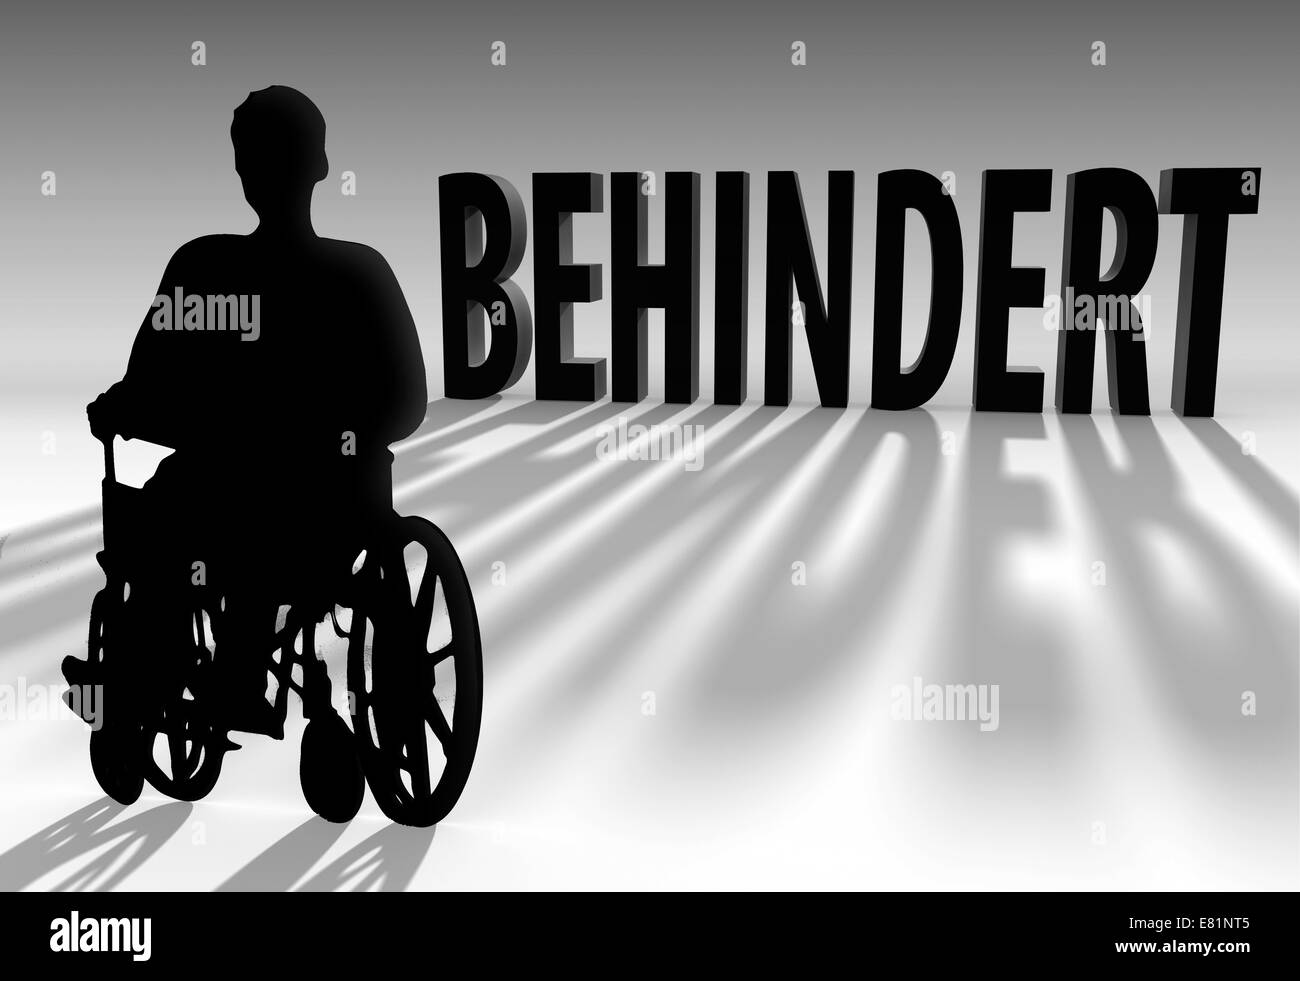 Persona seduta su una sedia a rotelle, lettering "behindert', Tedesco per 'Disabili', illustrazione Foto Stock